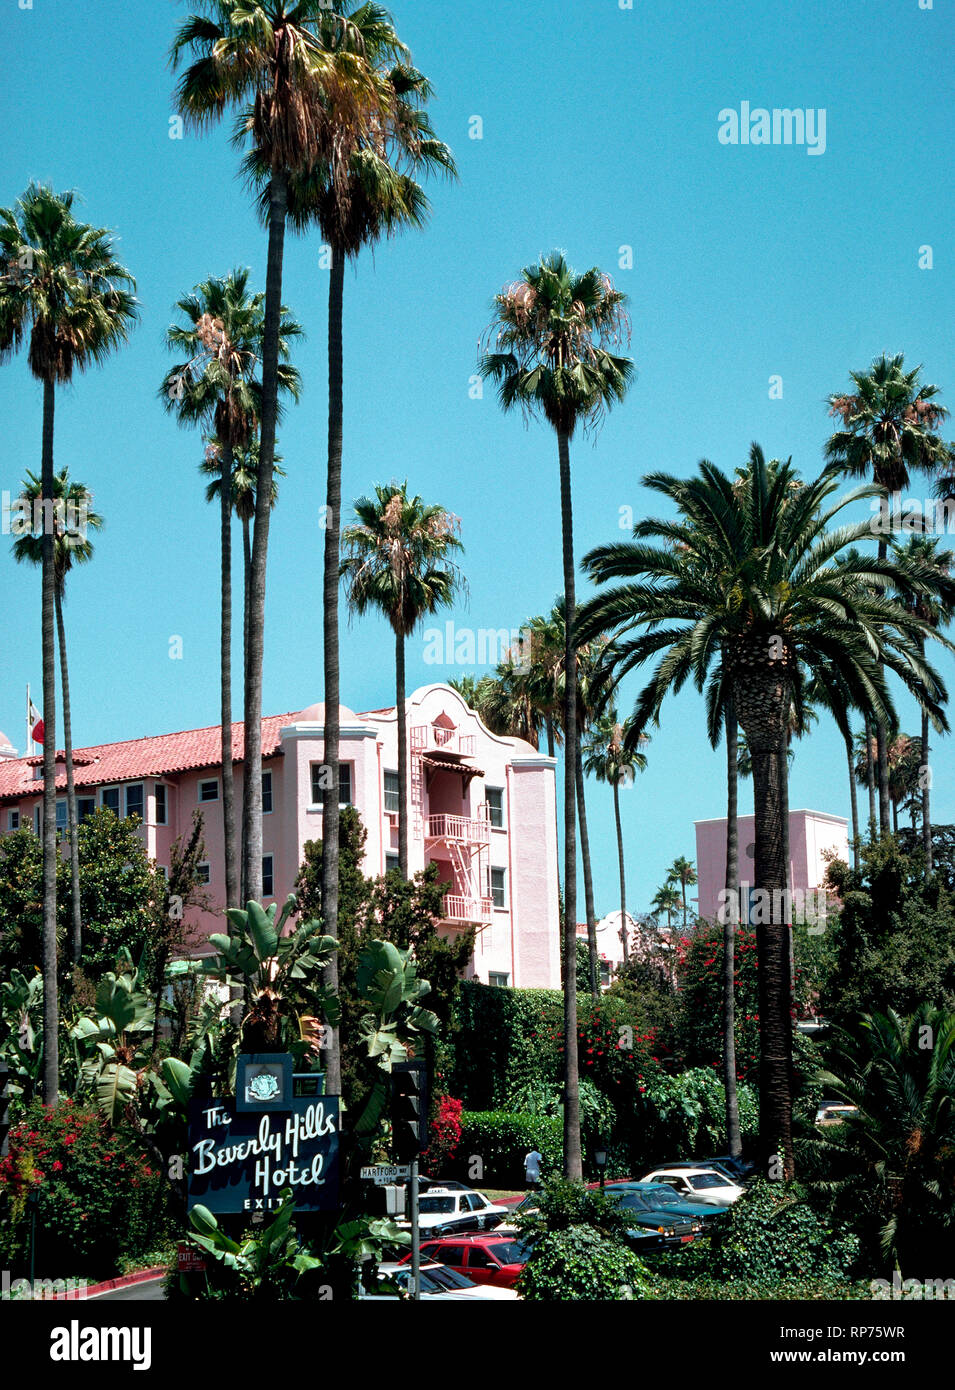 Palmiers certains châssis façade rose de la célèbre Beverly Hills Hôtel qui a été la maison loin de la maison pour des stars de cinéma et autres célébrités depuis son ouverture en 1912, qui était de deux ans avant sa ville éponyme de Beverly Hills a été incorporée dans le comté de Los Angeles, Californie, USA. Aujourd'hui, le luxueux hôtel est connu comme le Palais Rose et dispose de 210 chambres et 23 bungalows isolé entouré par 12 acres (4,86 hectares) de luxuriants jardins tropicaux et de fleurs exotiques. Les stars hollywoodiennes sont souvent vu dans son premier coin spot, le Polo Lounge. Banque D'Images